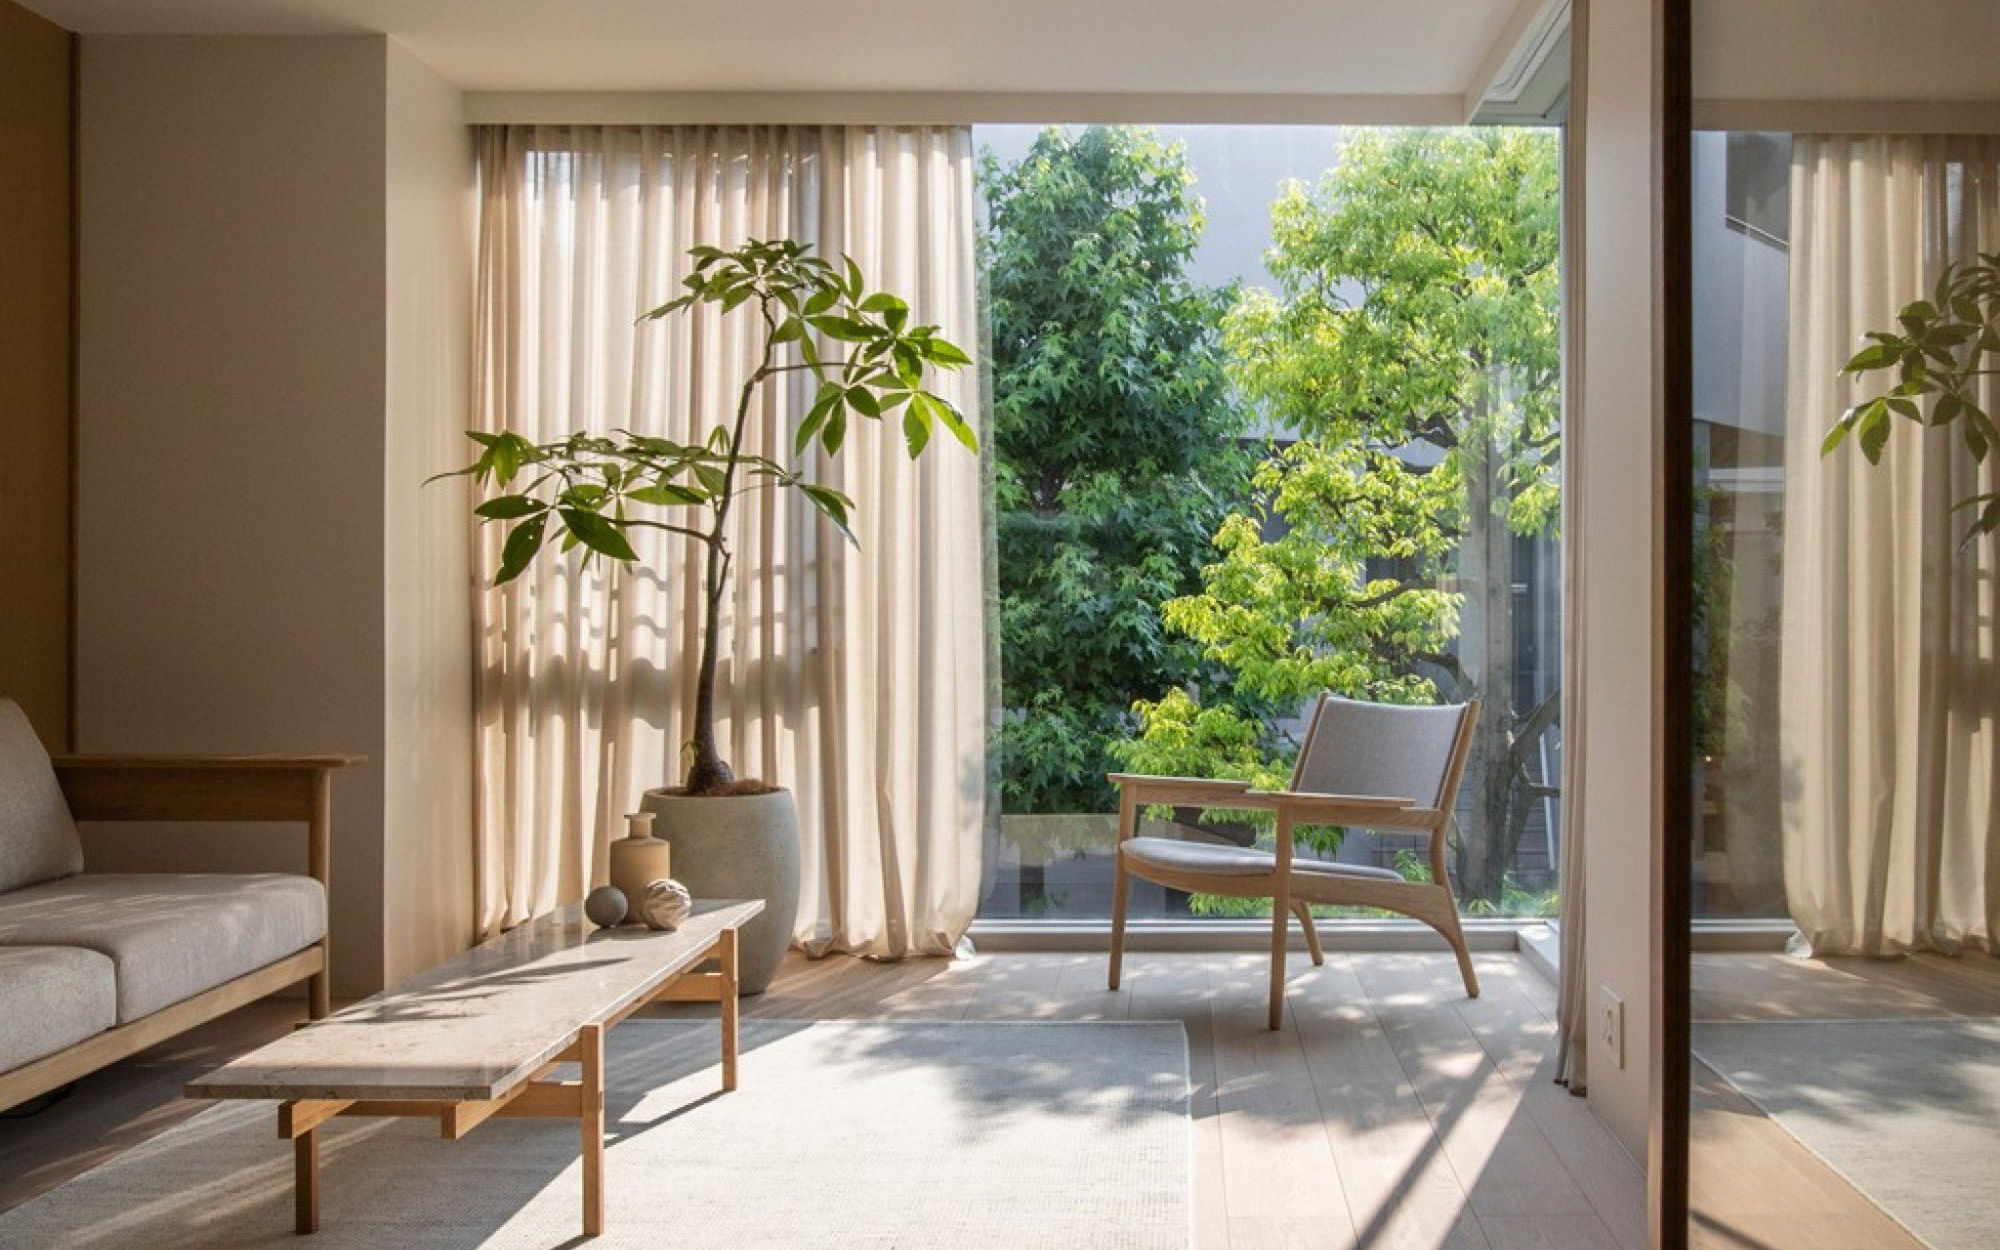 6 thiết kế phòng khách trang nhã, tinh tế lấy cảm hứng từ phong cách Nhật